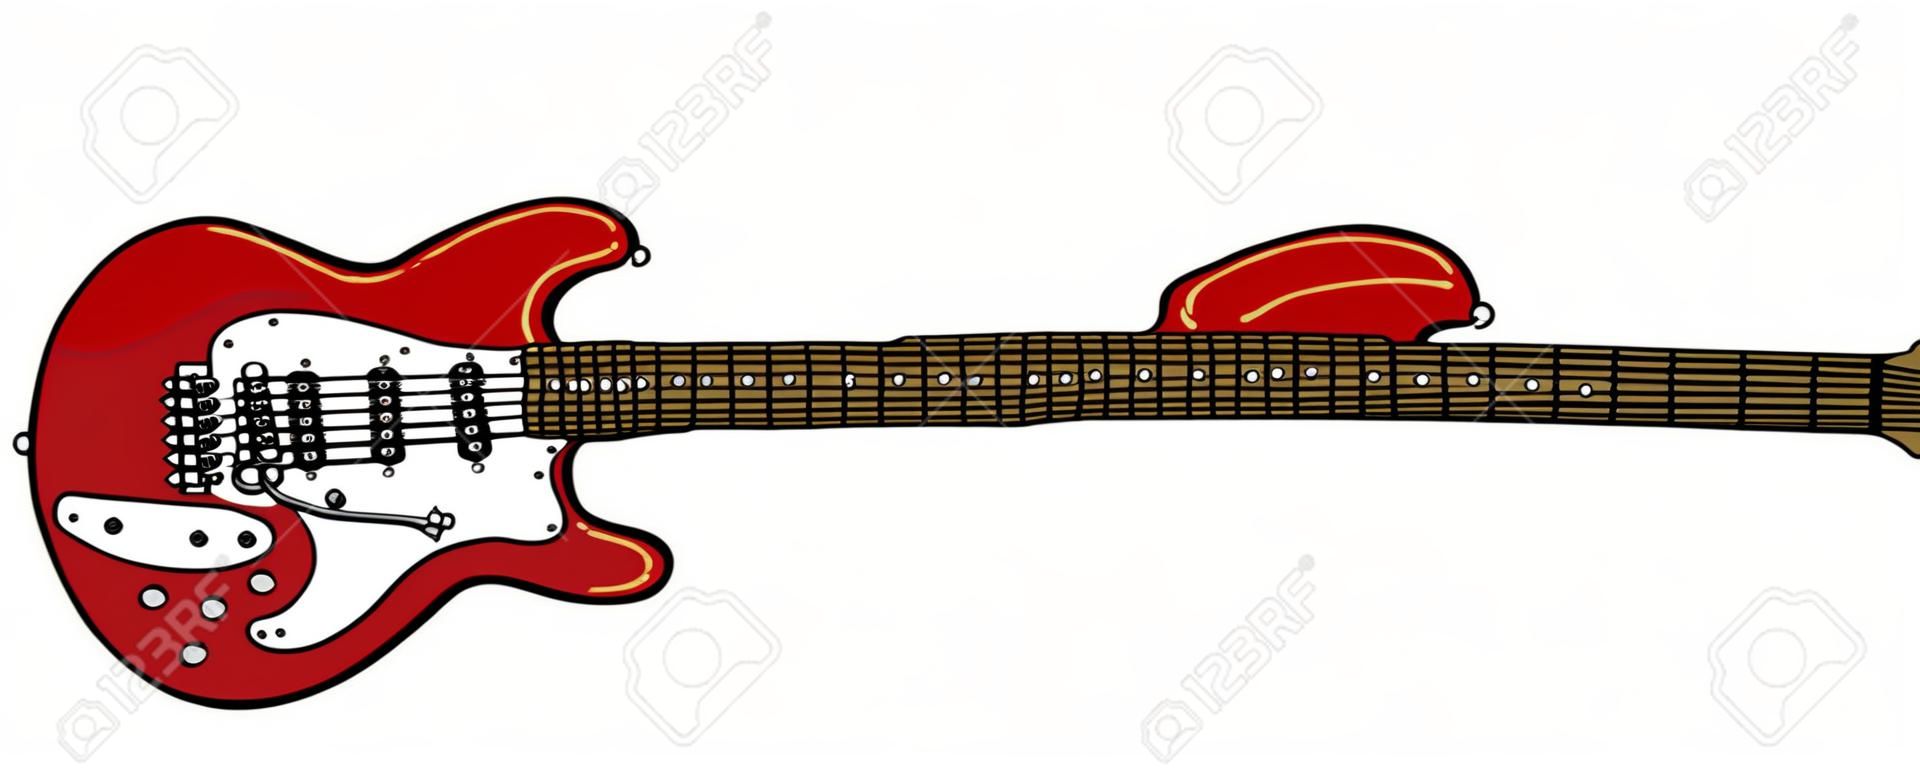 Le dessin à la main vectorisé d'une guitare électrique rouge classique